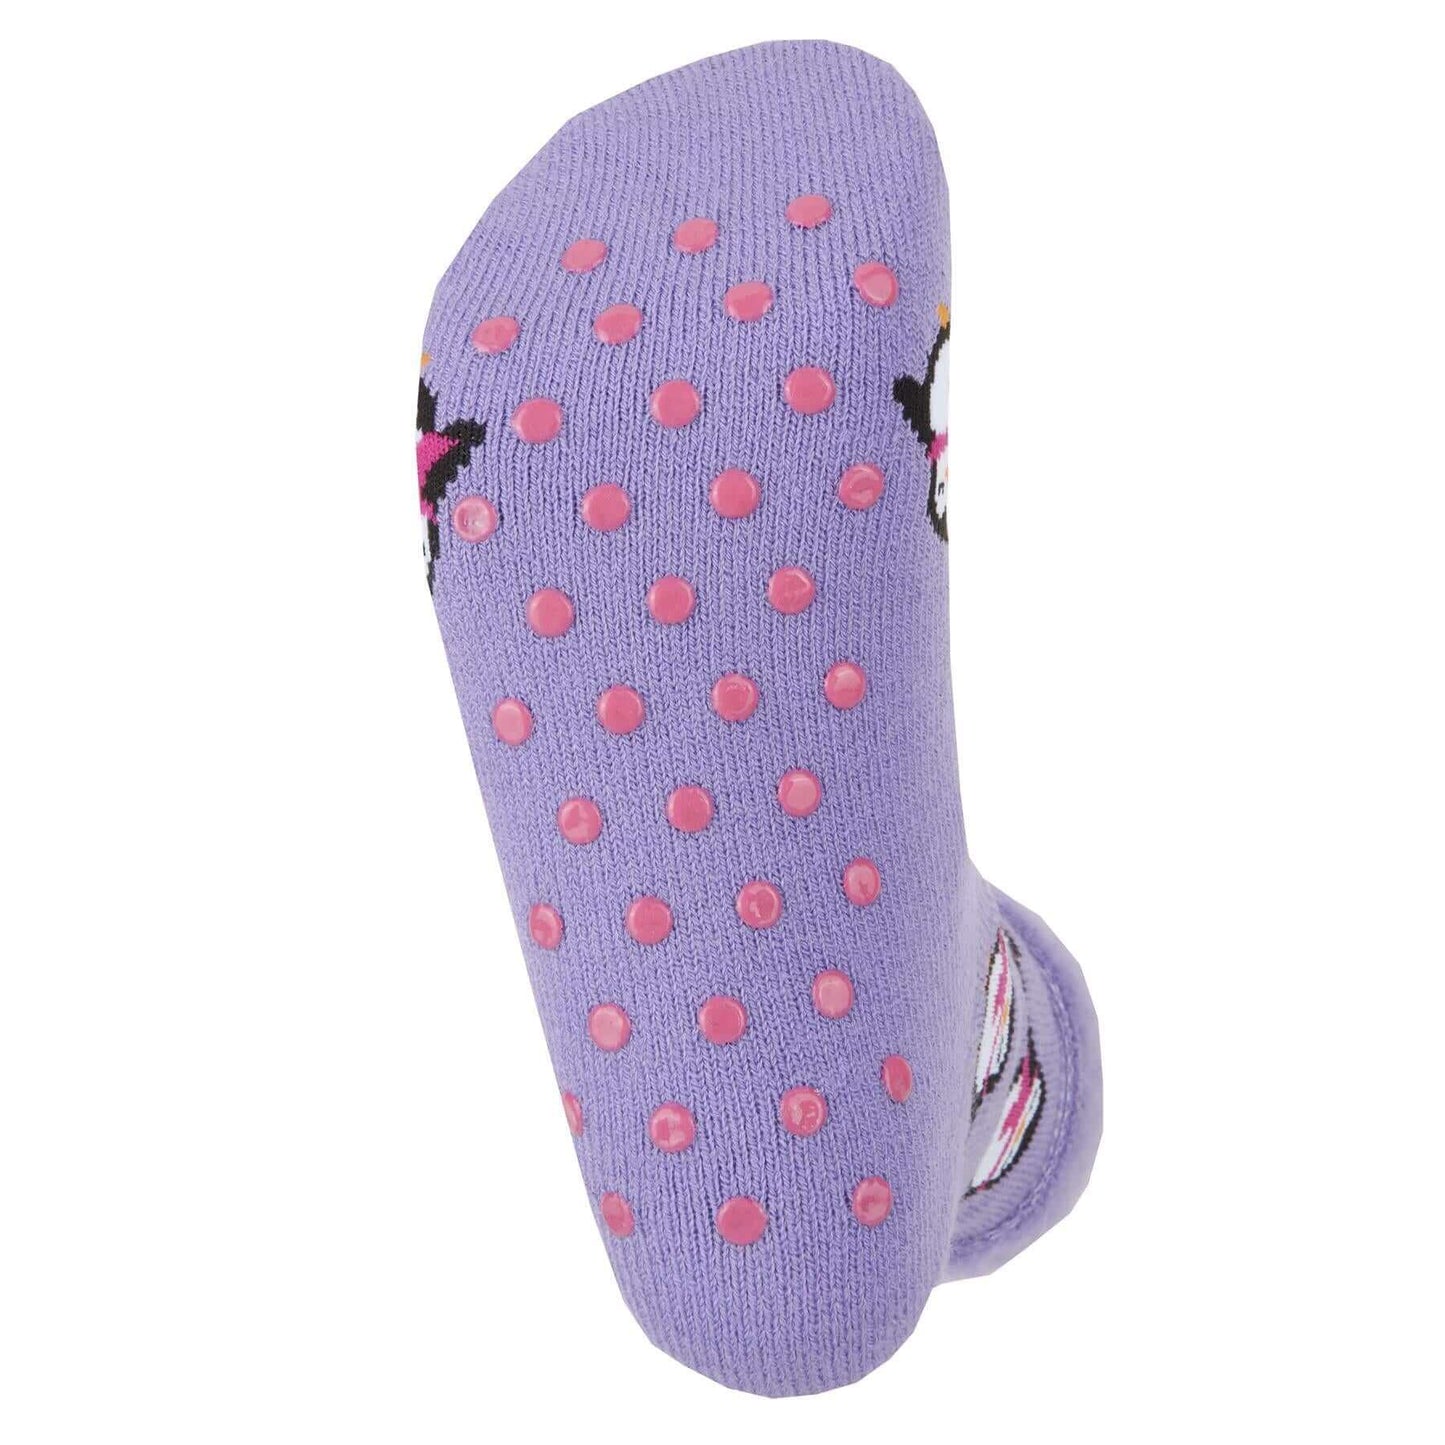 Pack Of 3 Women's Bed Socks Non Slip Thermal Slipper Socks Winter Gift Stocking Filler. Buy now for £7.00. A Socks by Sock Stack. 4-7, acrylic, assorted, blue, blush pink, boot socks, christmas, chunky, cosy, cream, designer, dusky pink, fluffy, fluffy pi